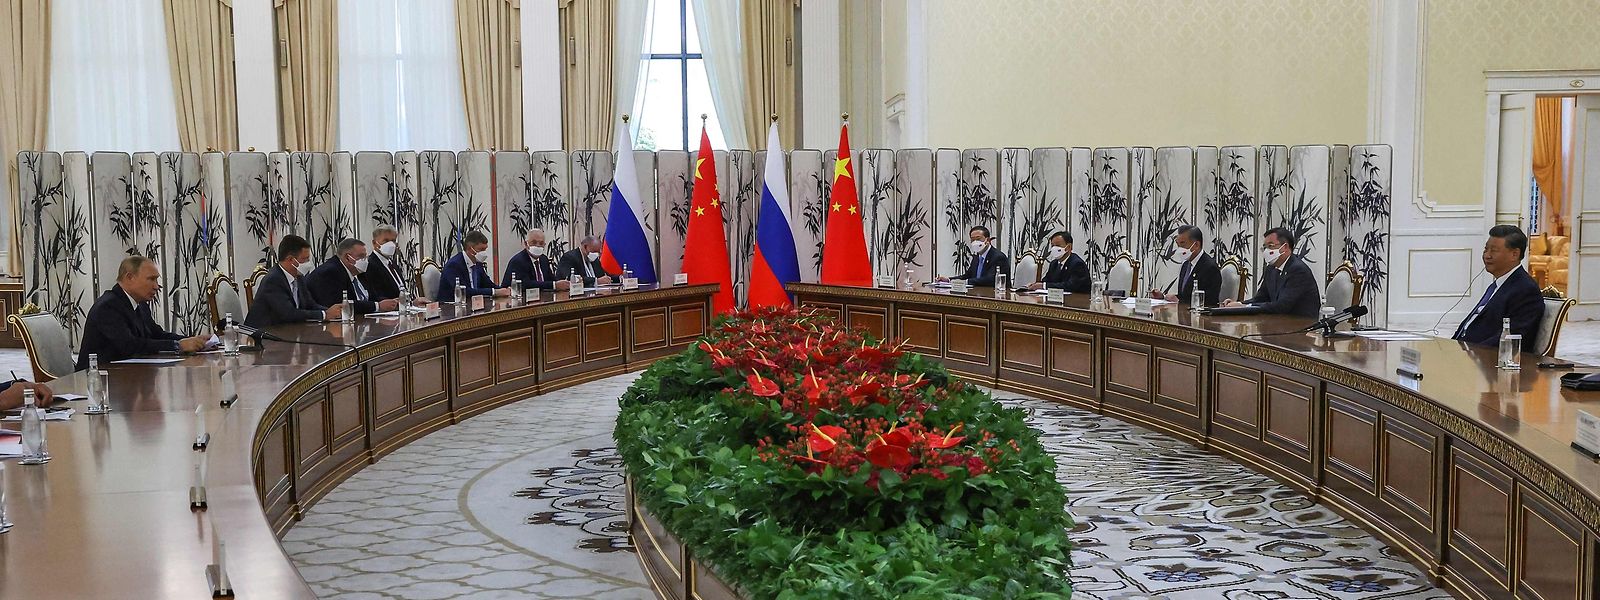 Kremlchef Wladimir Putin (l.) und Chinas Staats- und Parteichef Xi Jinping (r.) treffen am Rande des Gipfels der Organisation für Zusammenarbeit (SCO) in Samarkand zusammen. Nach der internationalen Ächtung wegen seines Angriffskrieges gegen die Ukraine ist das Gipfeltreffen in Usbekistan für Putin eine Gelegenheit, um zu zeigen, dass er keineswegs isoliert ist.